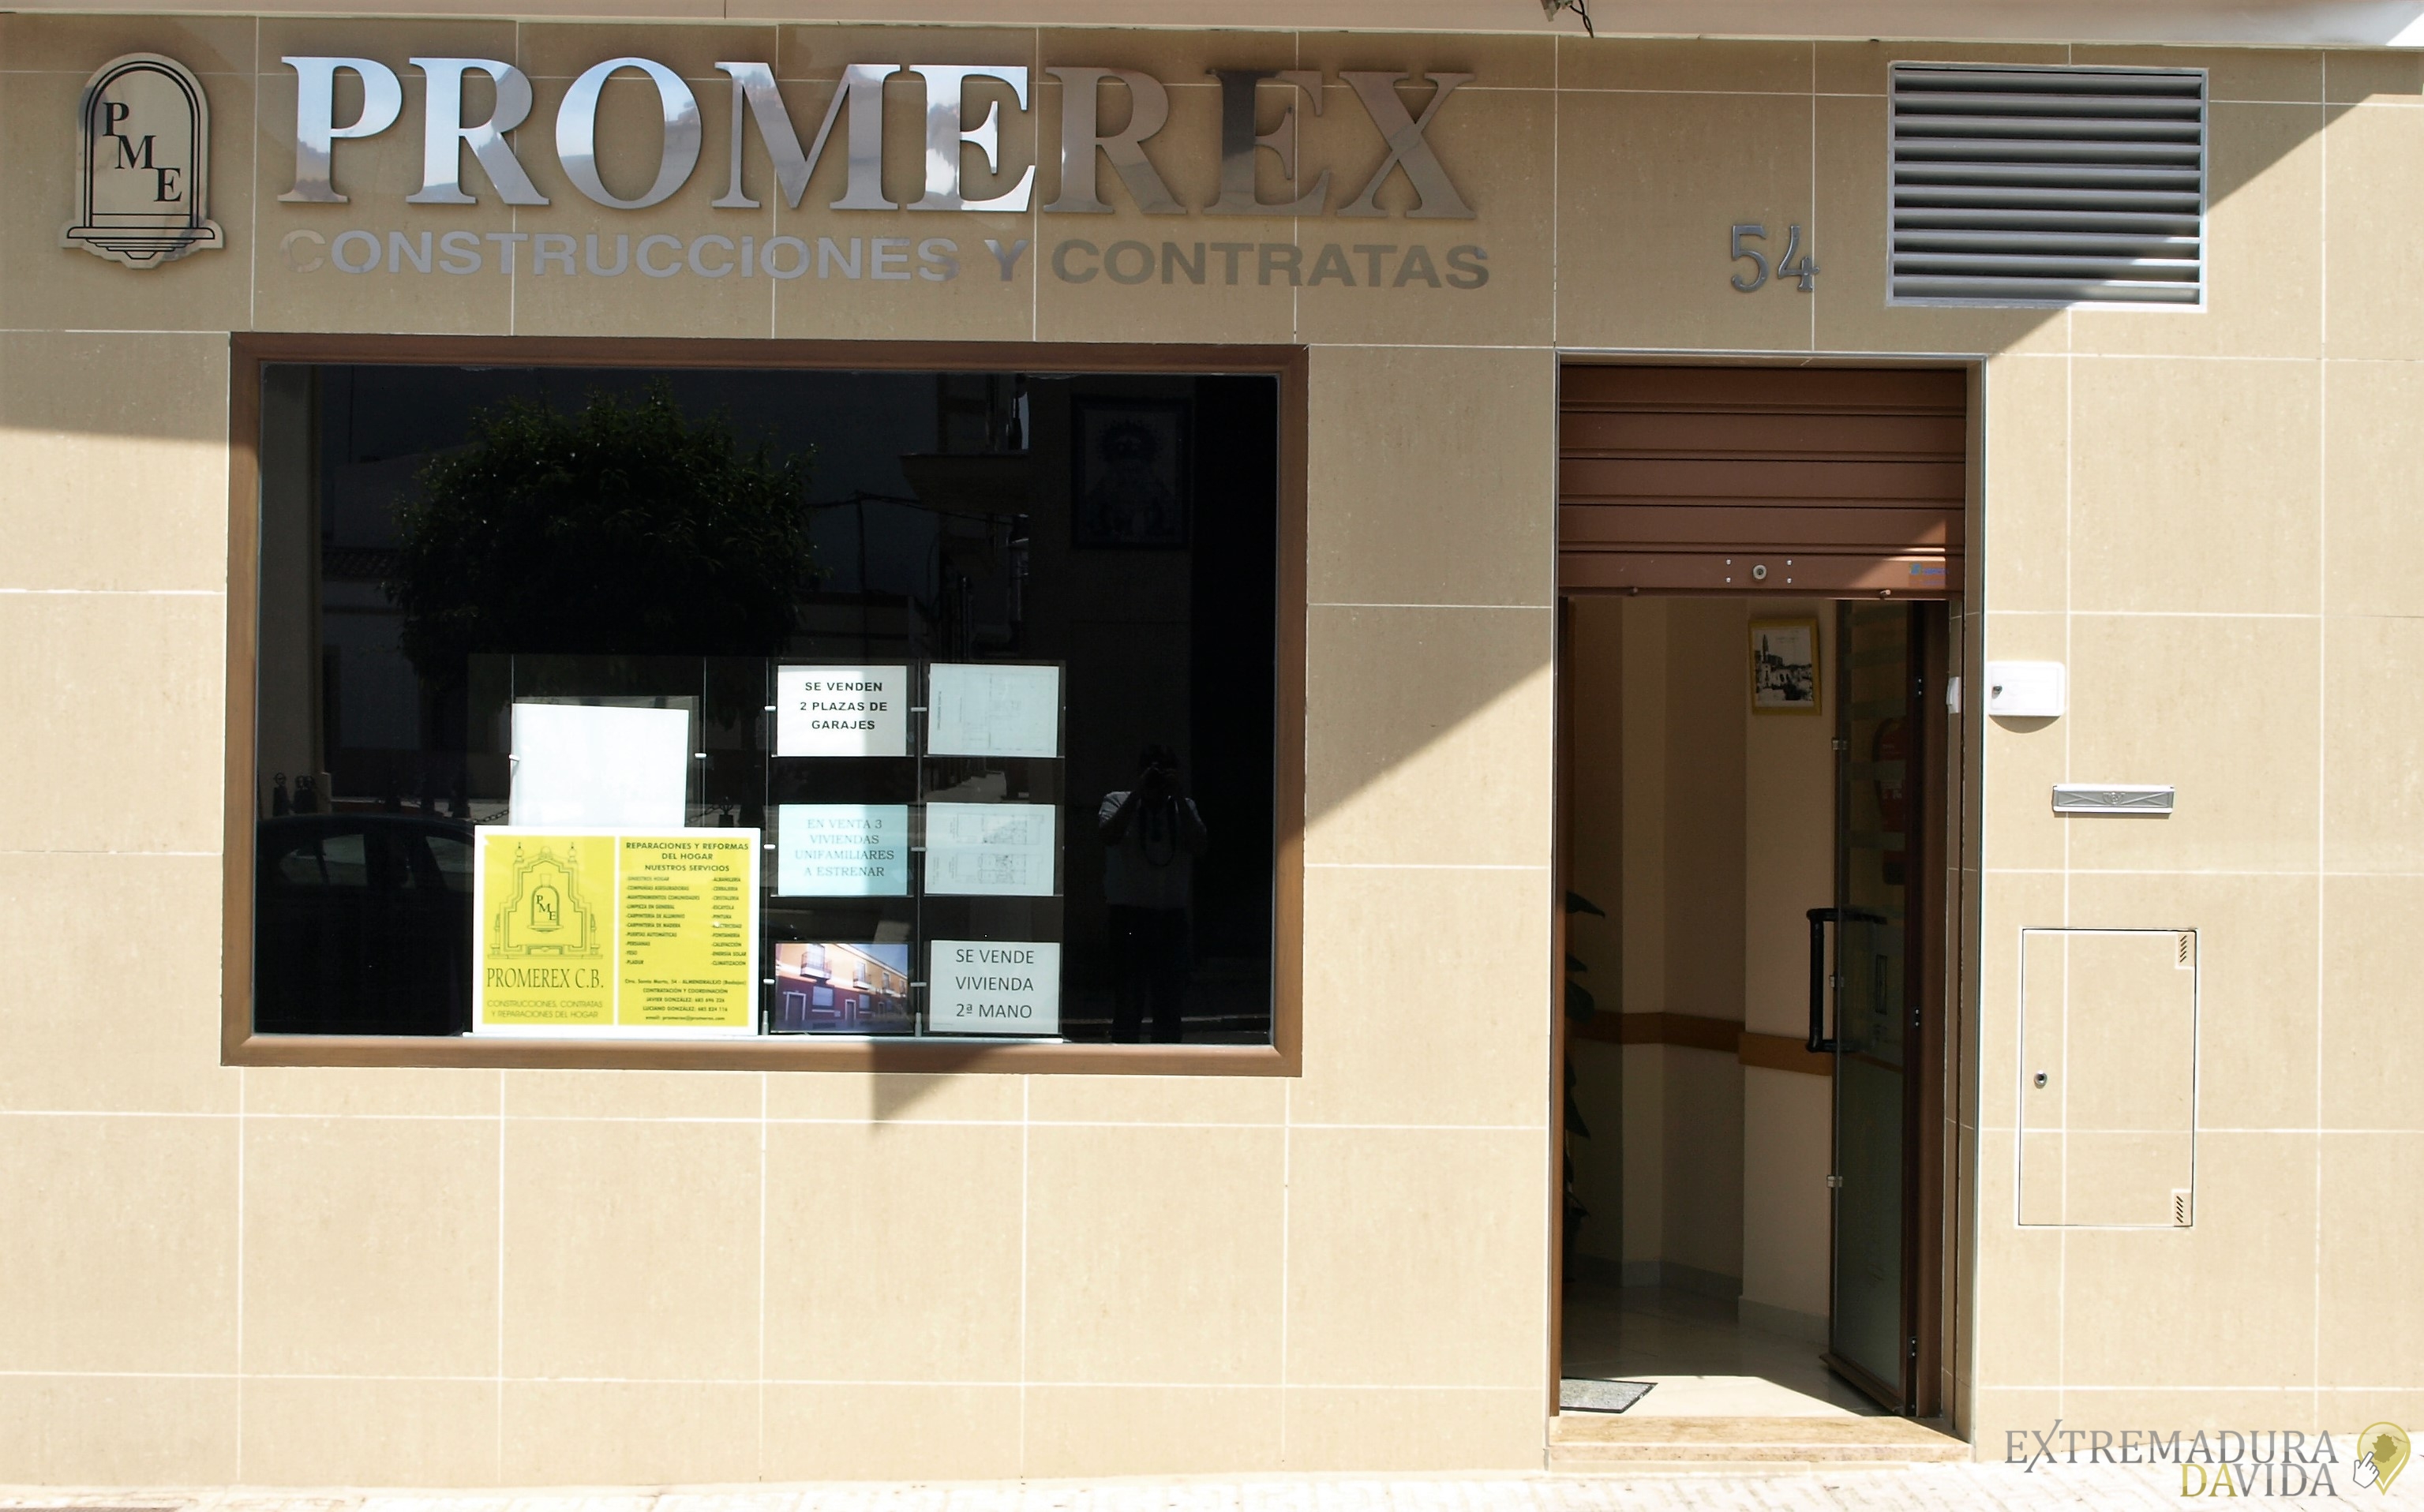 PROMEREX S.l Empresa Multiservicios , Construcciones, Subcontratas y Reparaciones del Hogar En Almendralejo.